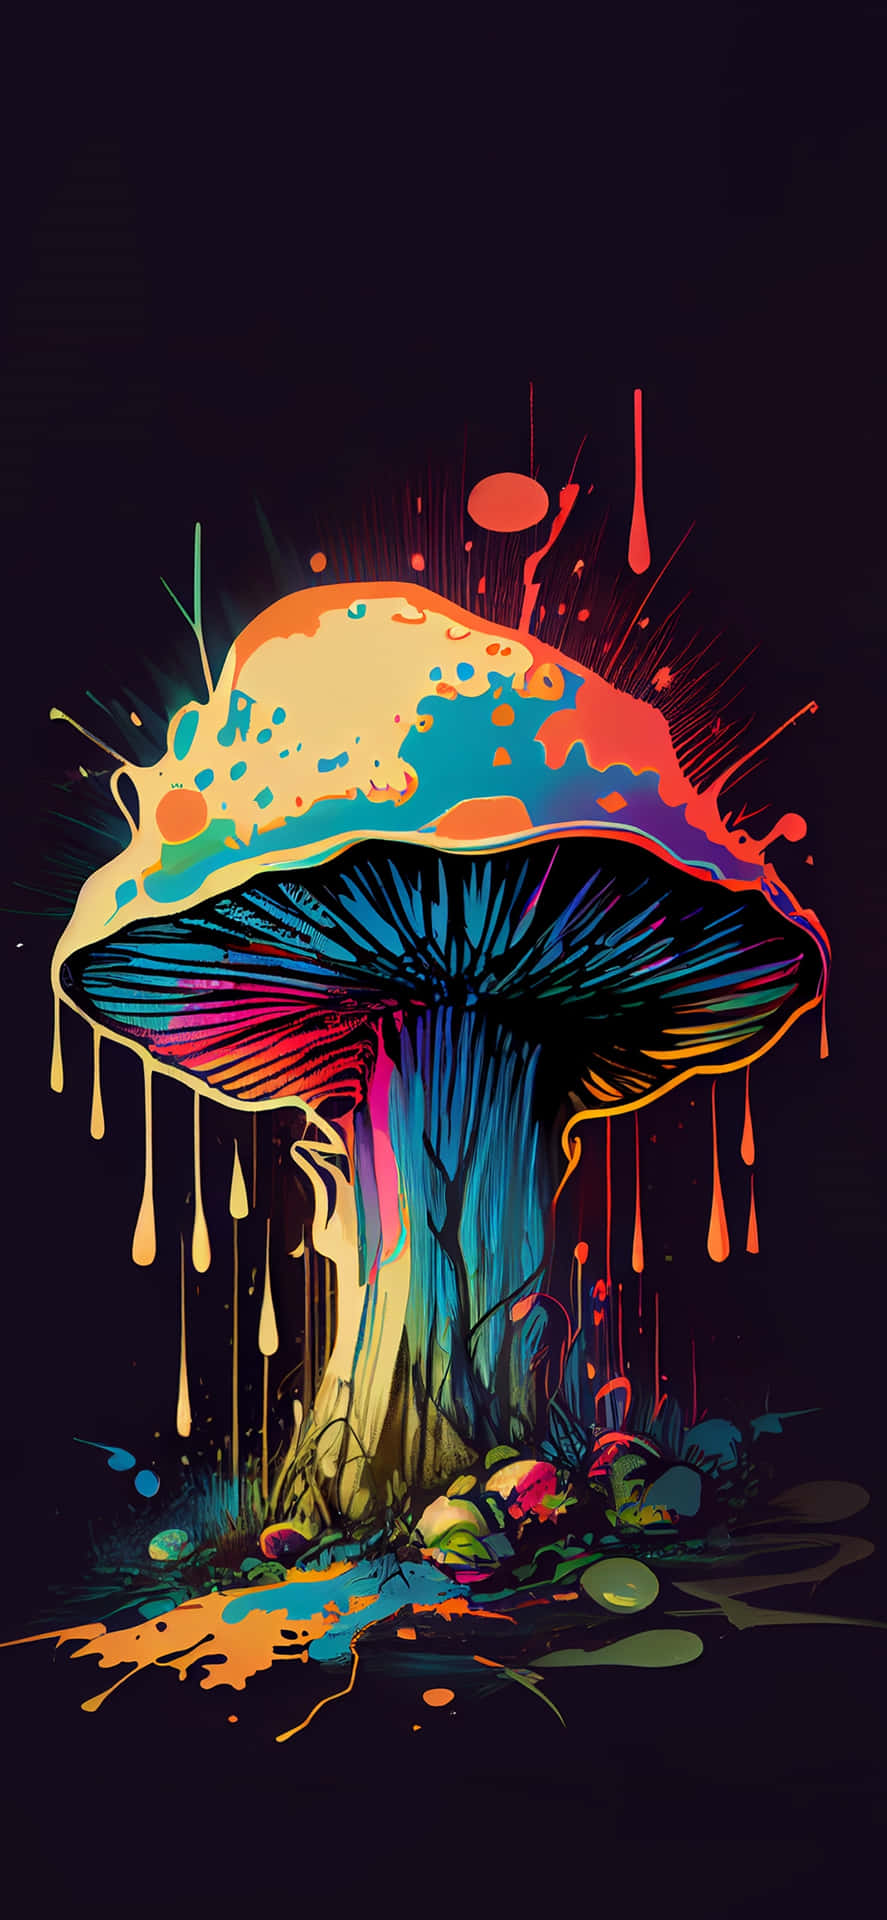 Vibrant Psychedelic Mushroom Art.jpg Wallpaper